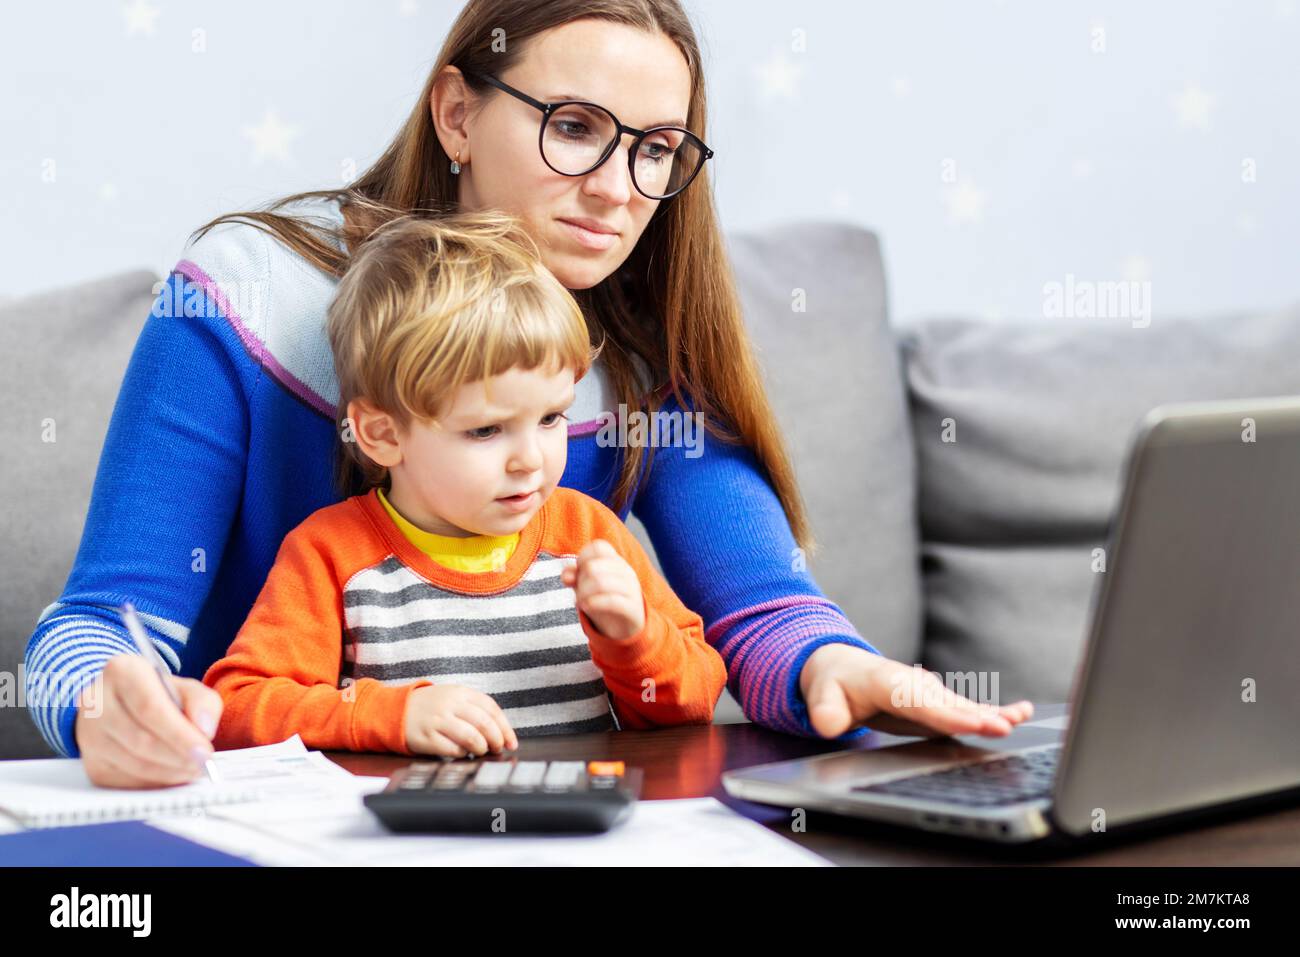 Giovane donna che lavora a casa con un notebook e un bambino in grembo Foto Stock